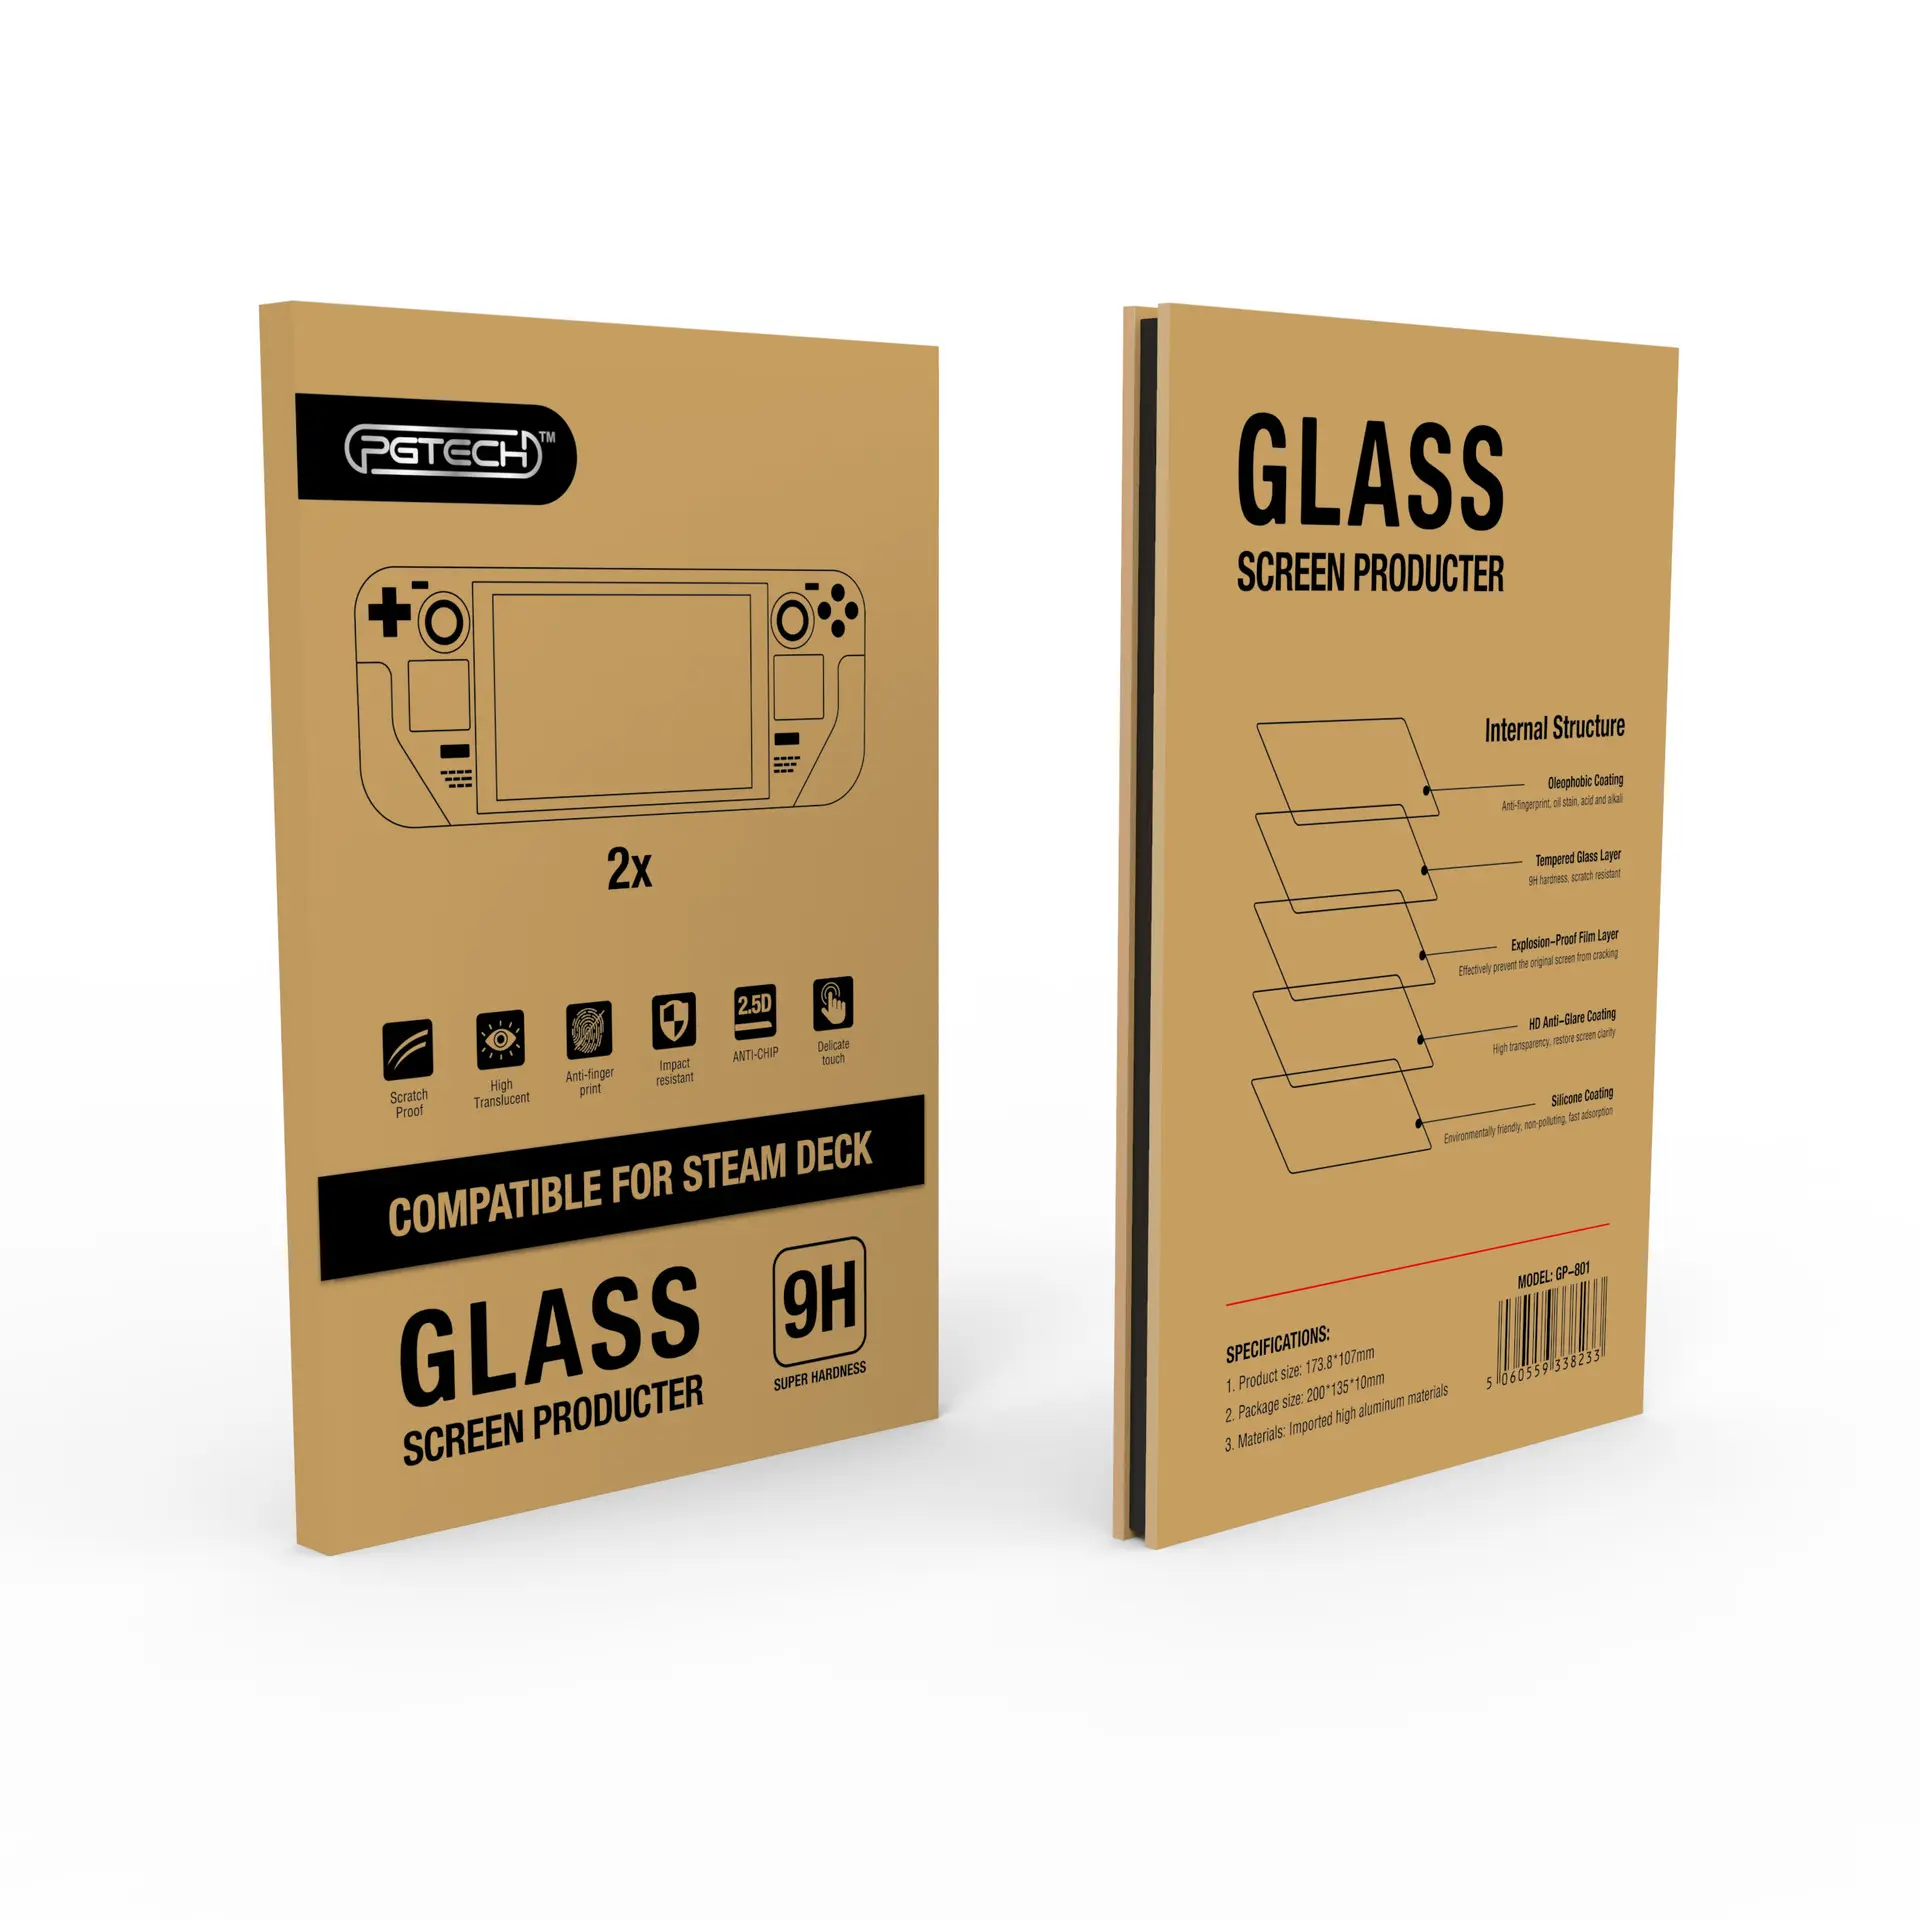 Película protectora de pantalla de vidrio templado GP-801, cubierta de vapor, Protector de pantalla, 2 uds.